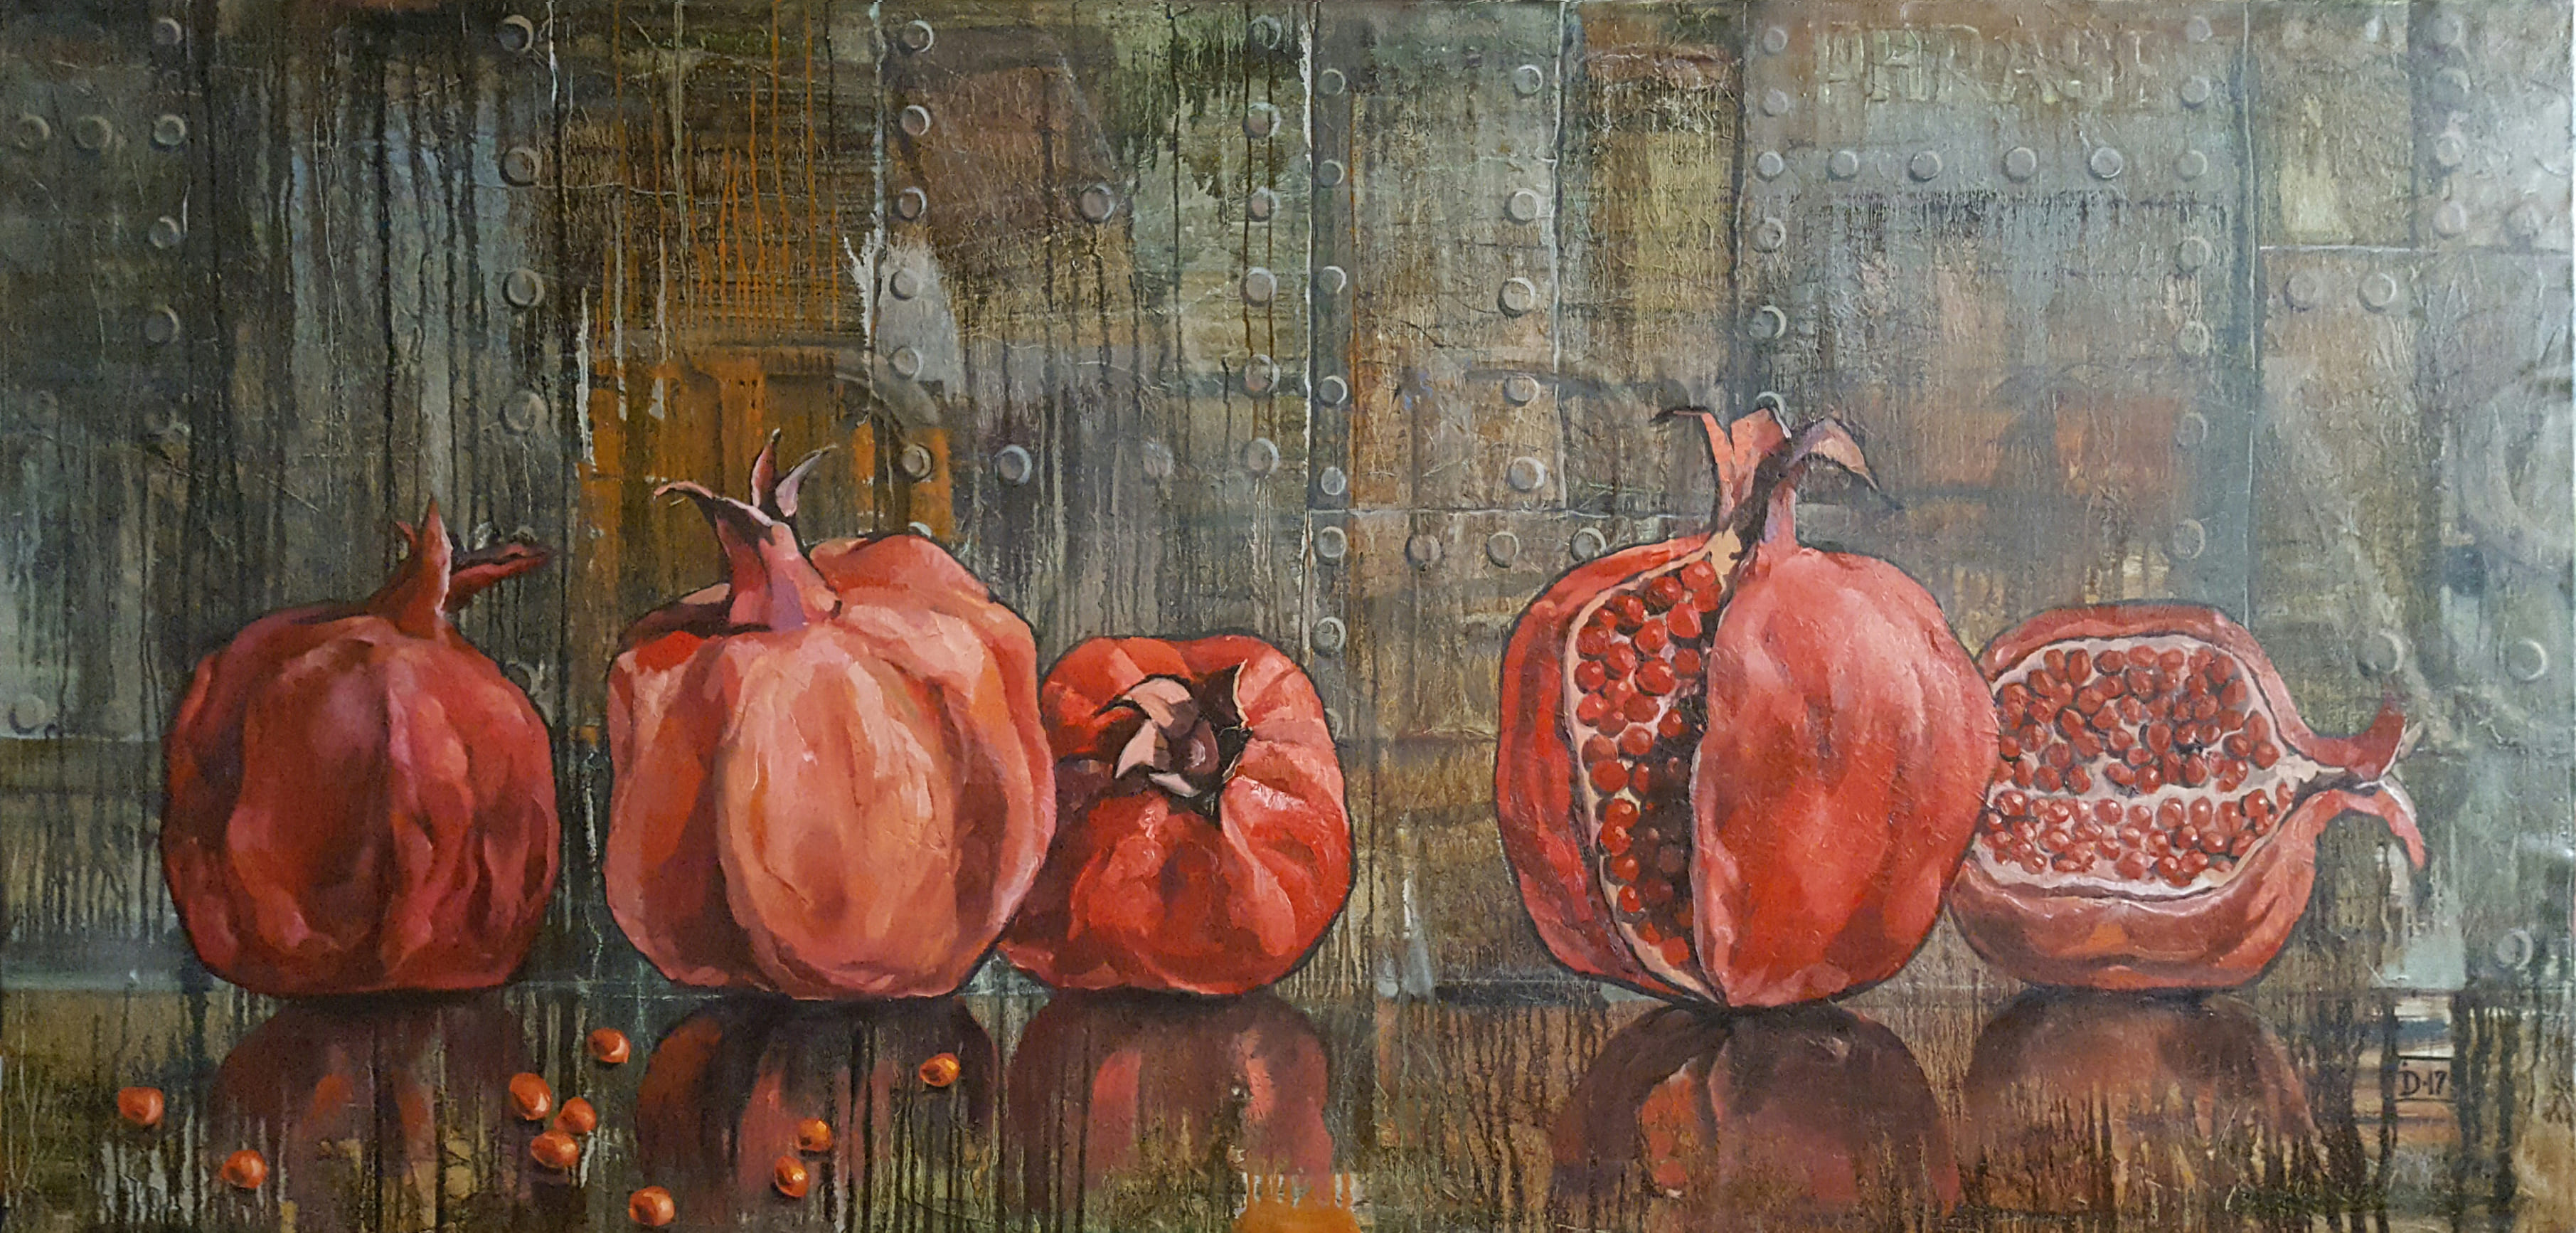 Pomegranate fruit - 1, Dmitry Ivanov, Buy the painting Oil